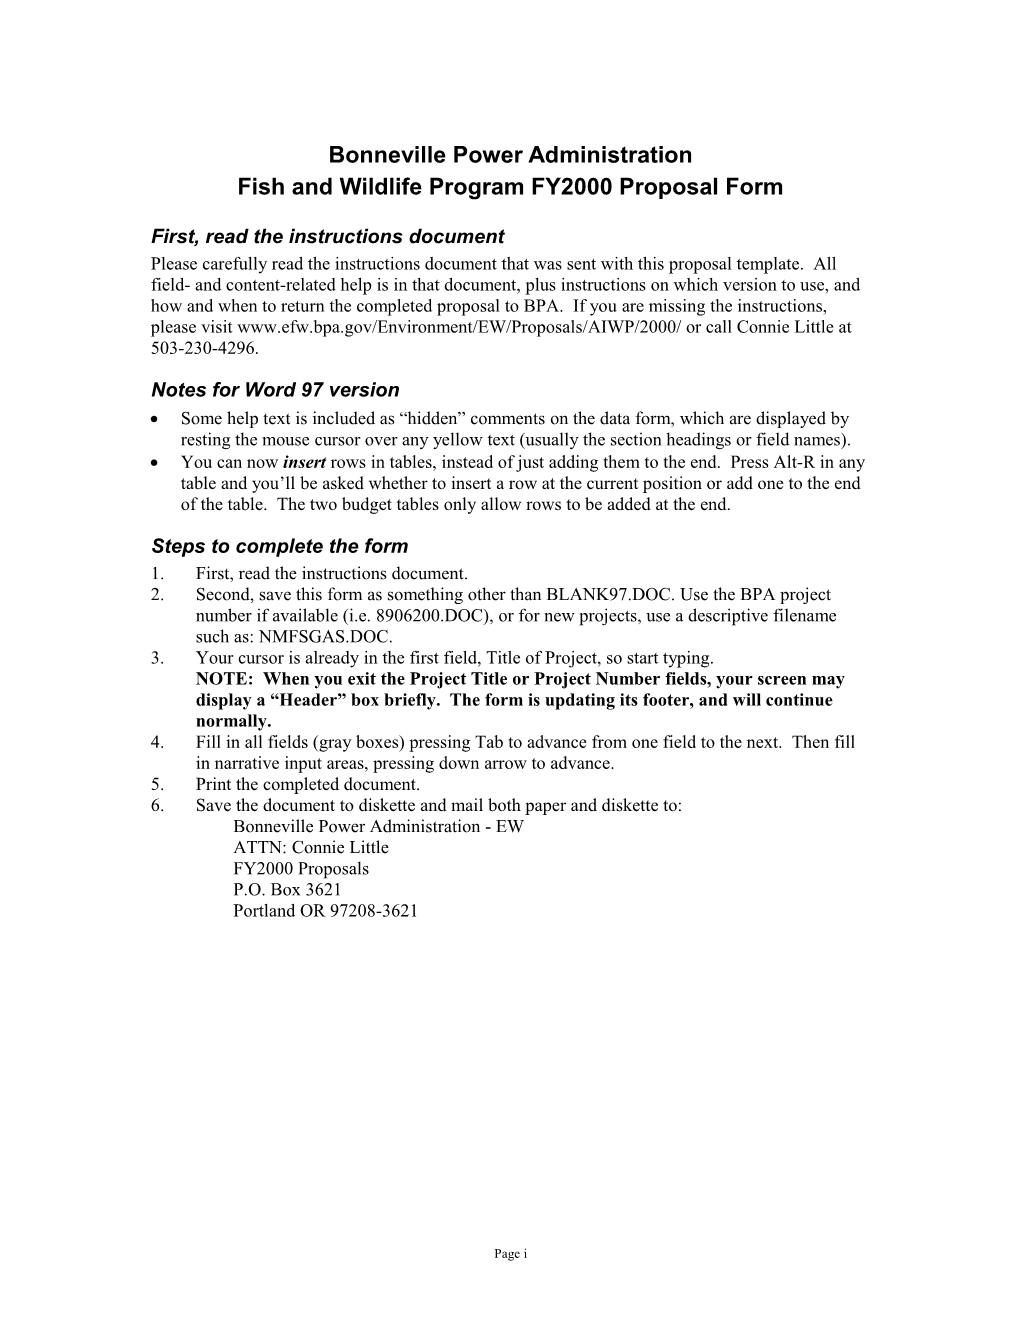 Bonneville F&W Program Proposal - Word 97